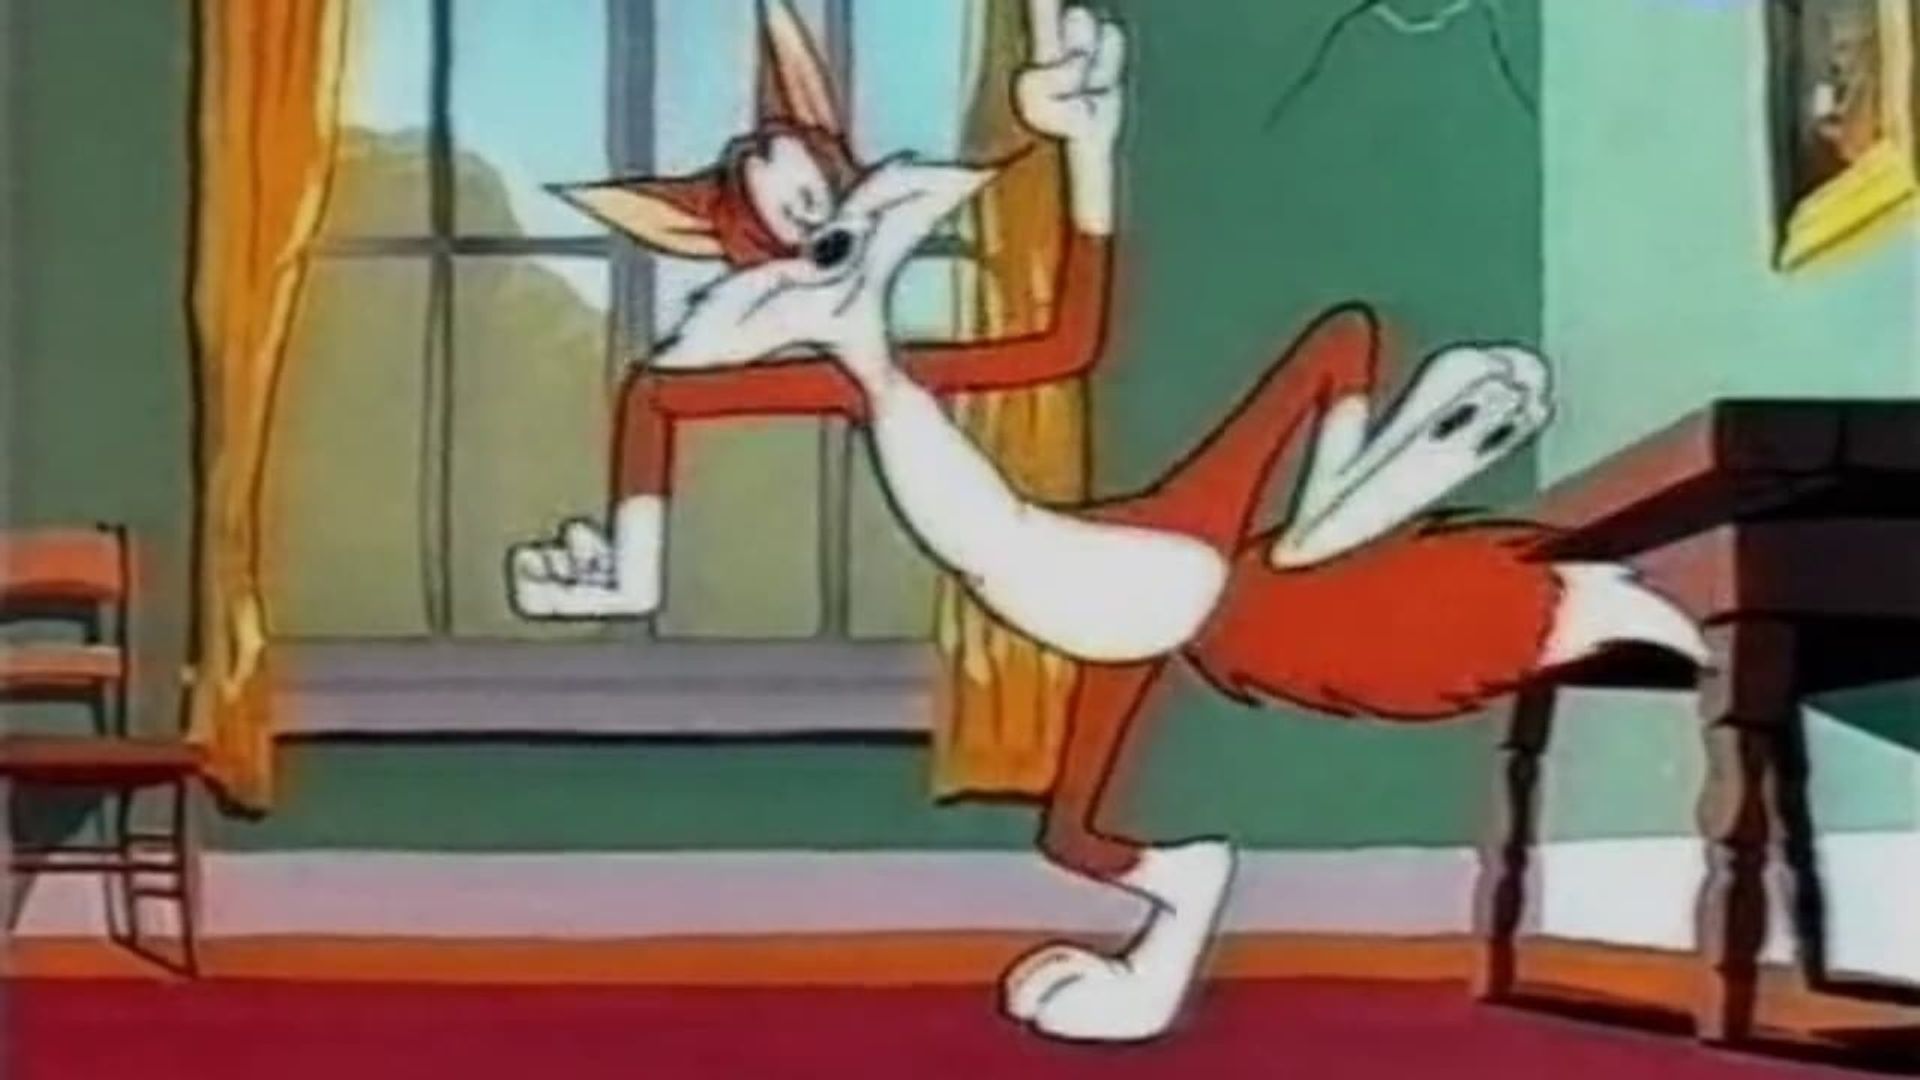 A Fox in a Fix background